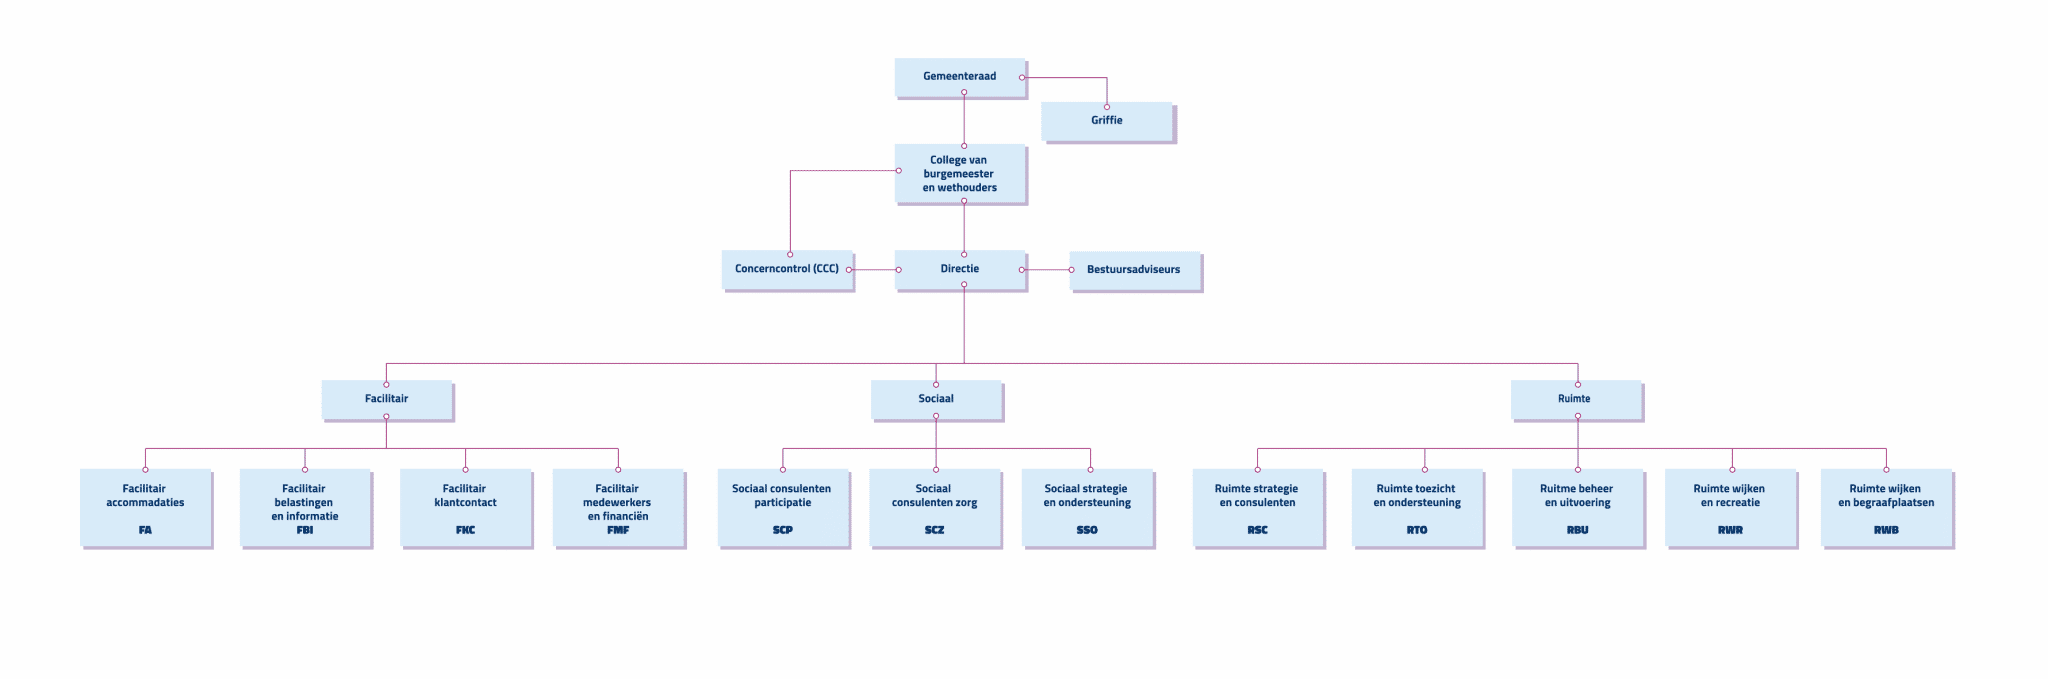 Een schematische weergave van de gemeentelijke organisatie